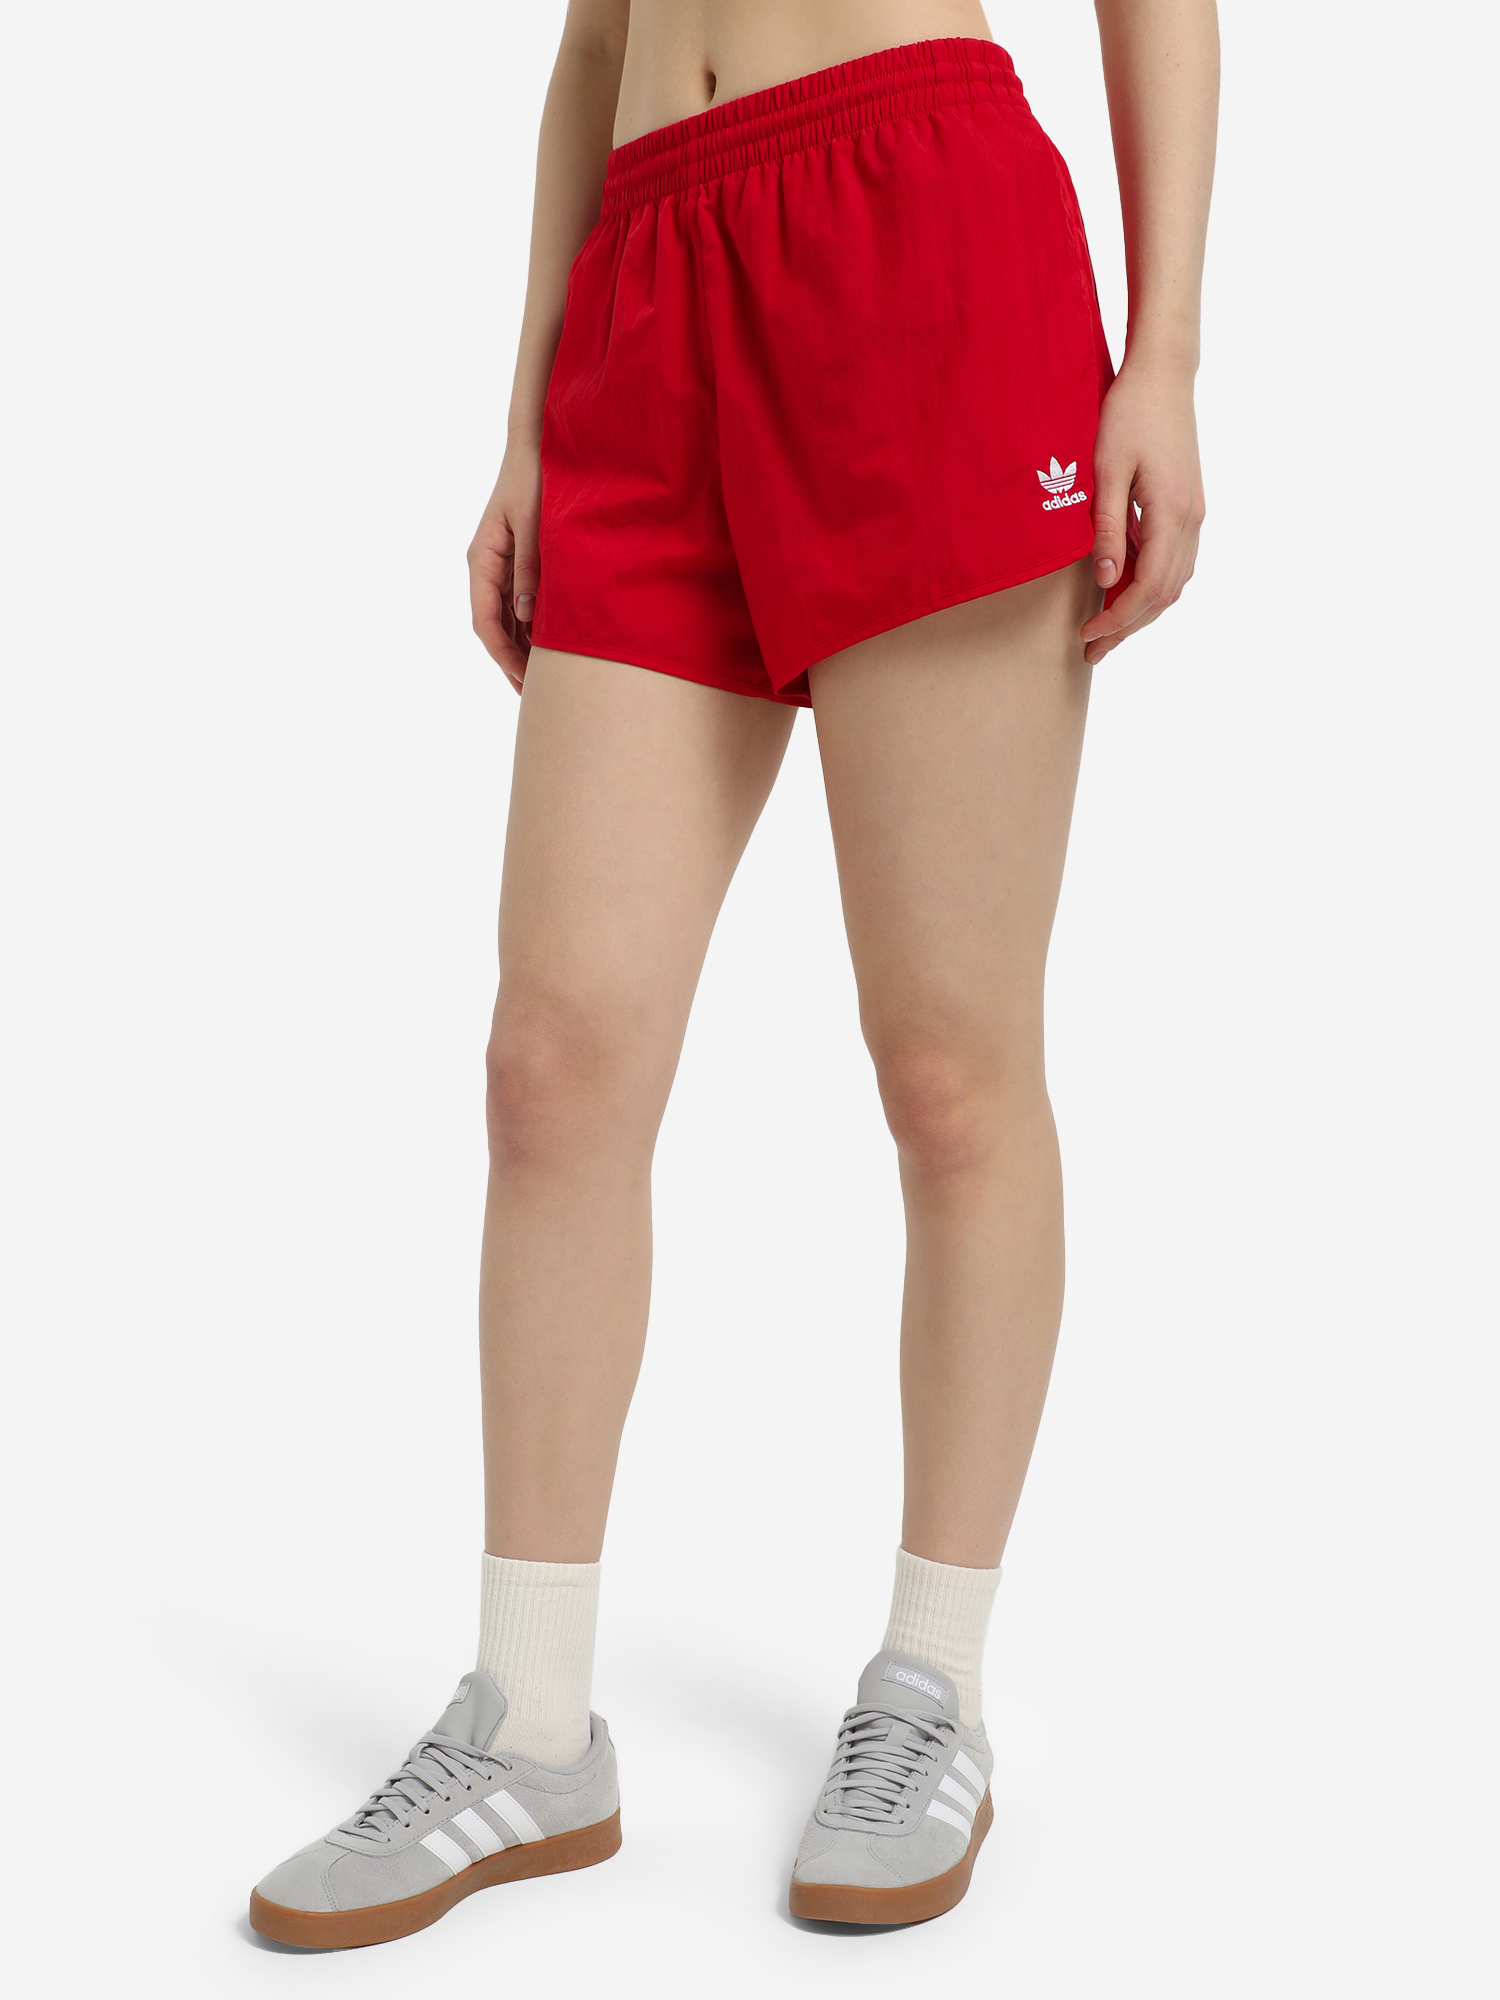 Шорты женские adidas 3-Stripes, Красный футболка мужская adidas estro 19 красный